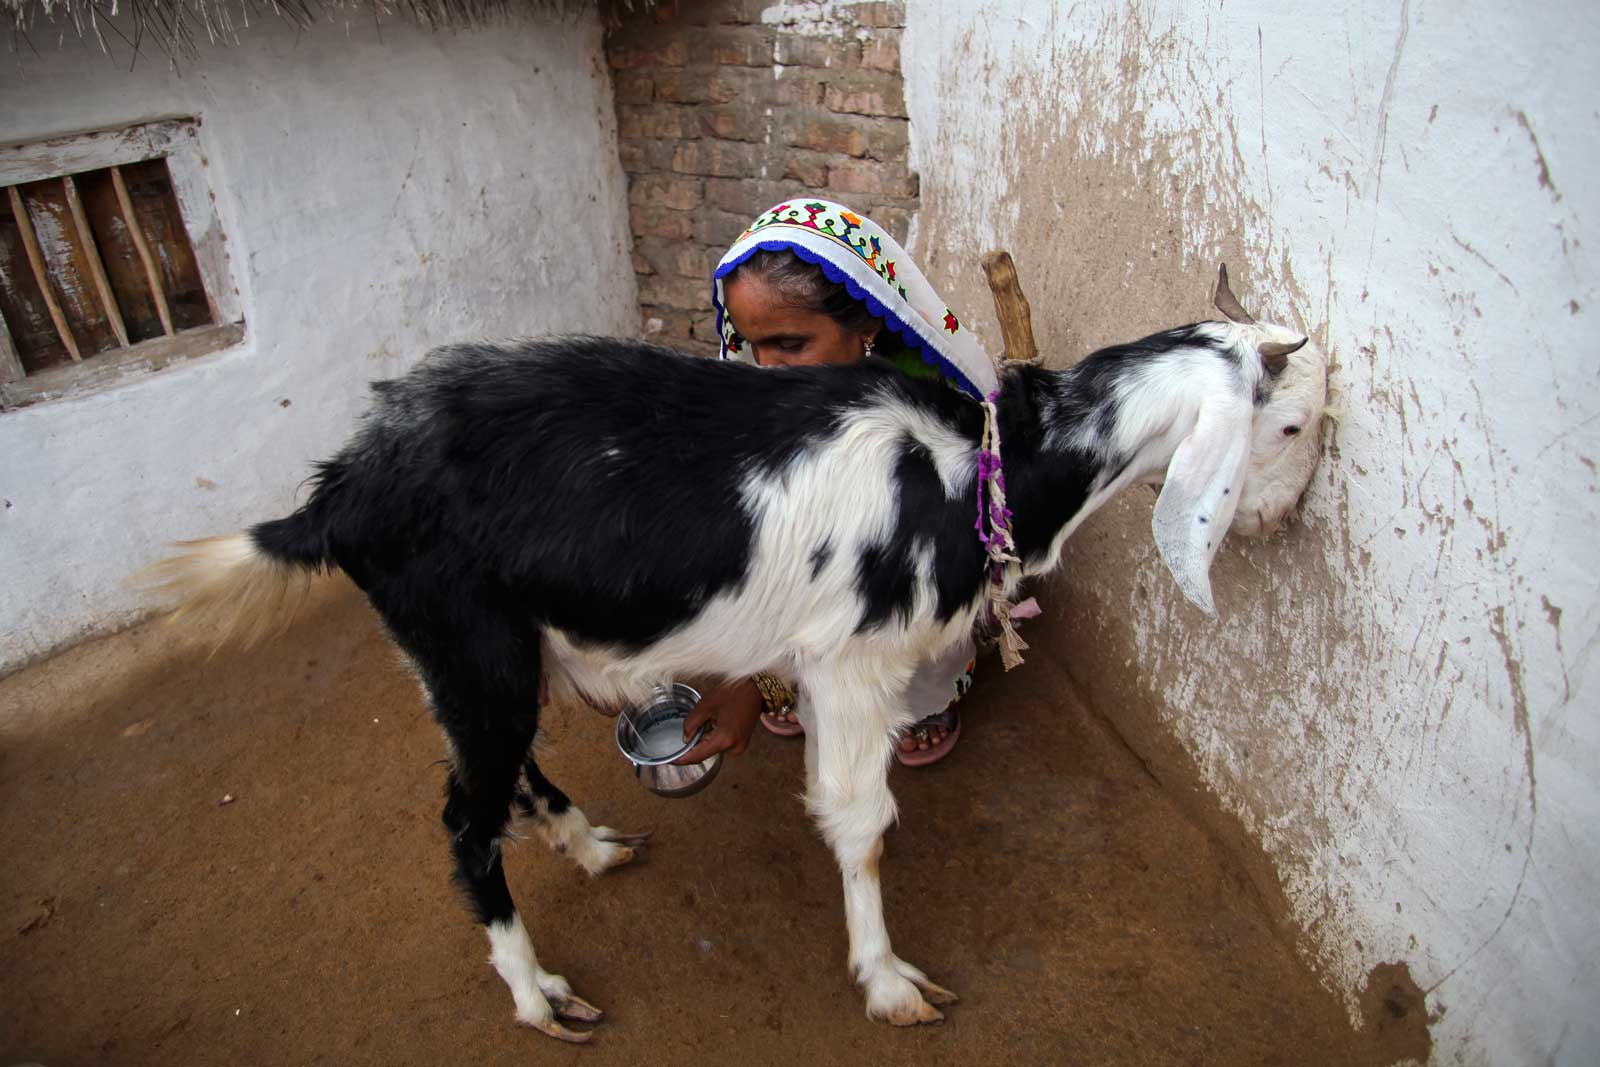   Traire la chèvre de la famille fait partie des tâches quotidiennes de Bai tôt le matin. Au Pakistan, les 100 000 femmes agents de santé sont des épouses qui doivent trouver un équilibre entre les tâches quotidiennes de la gestion d’un foyer et celles d’un agent de santé communautaire.